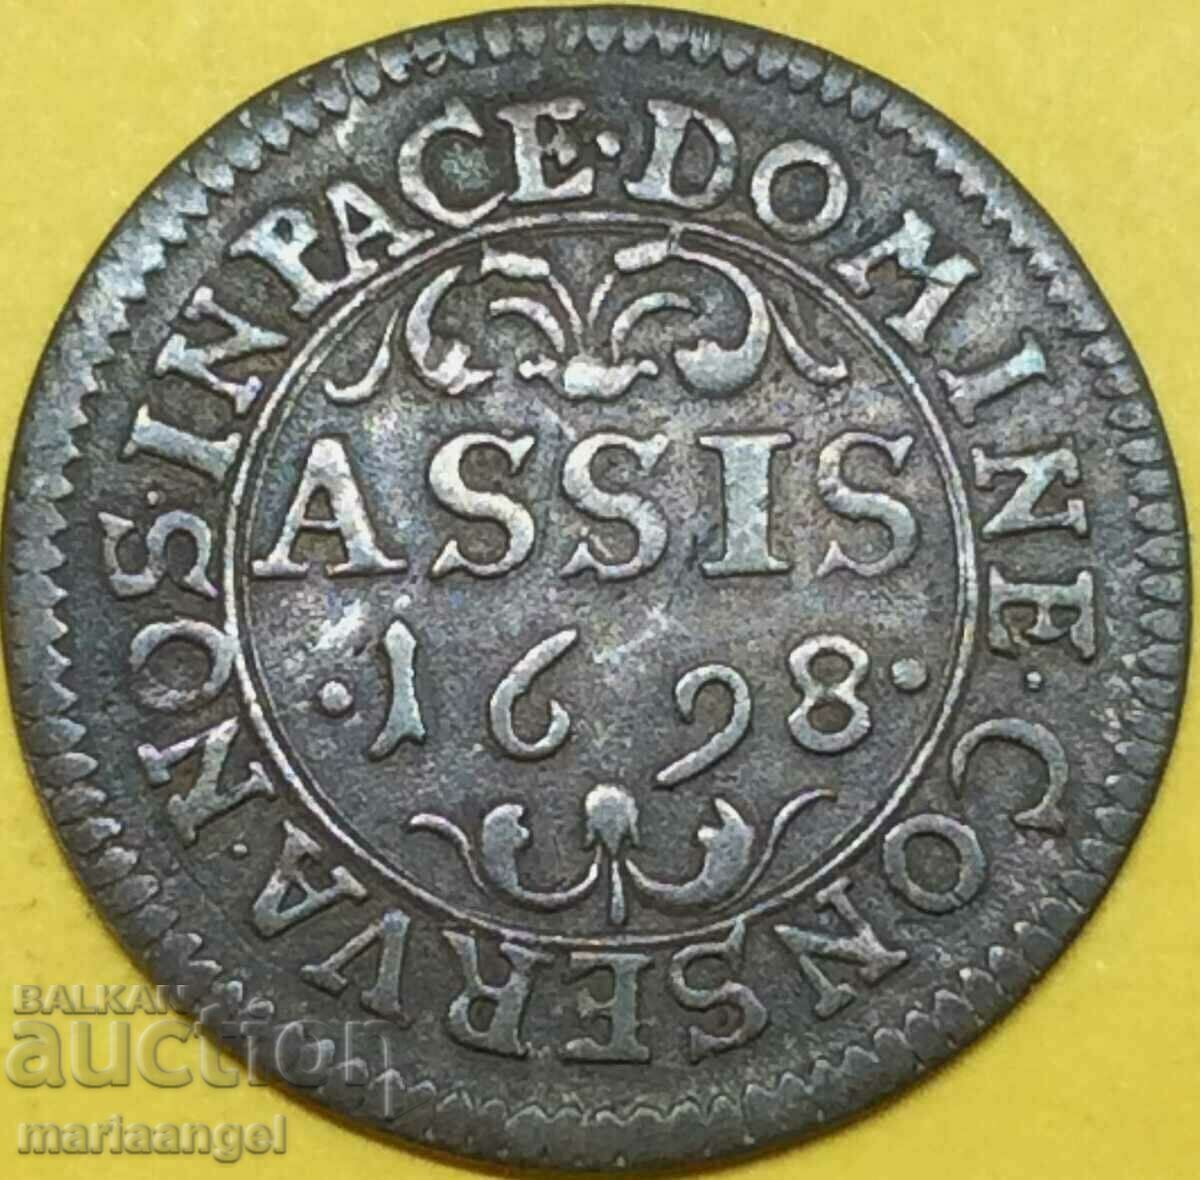 Elveția 1 Assis 1698 canton Basel argint - rar